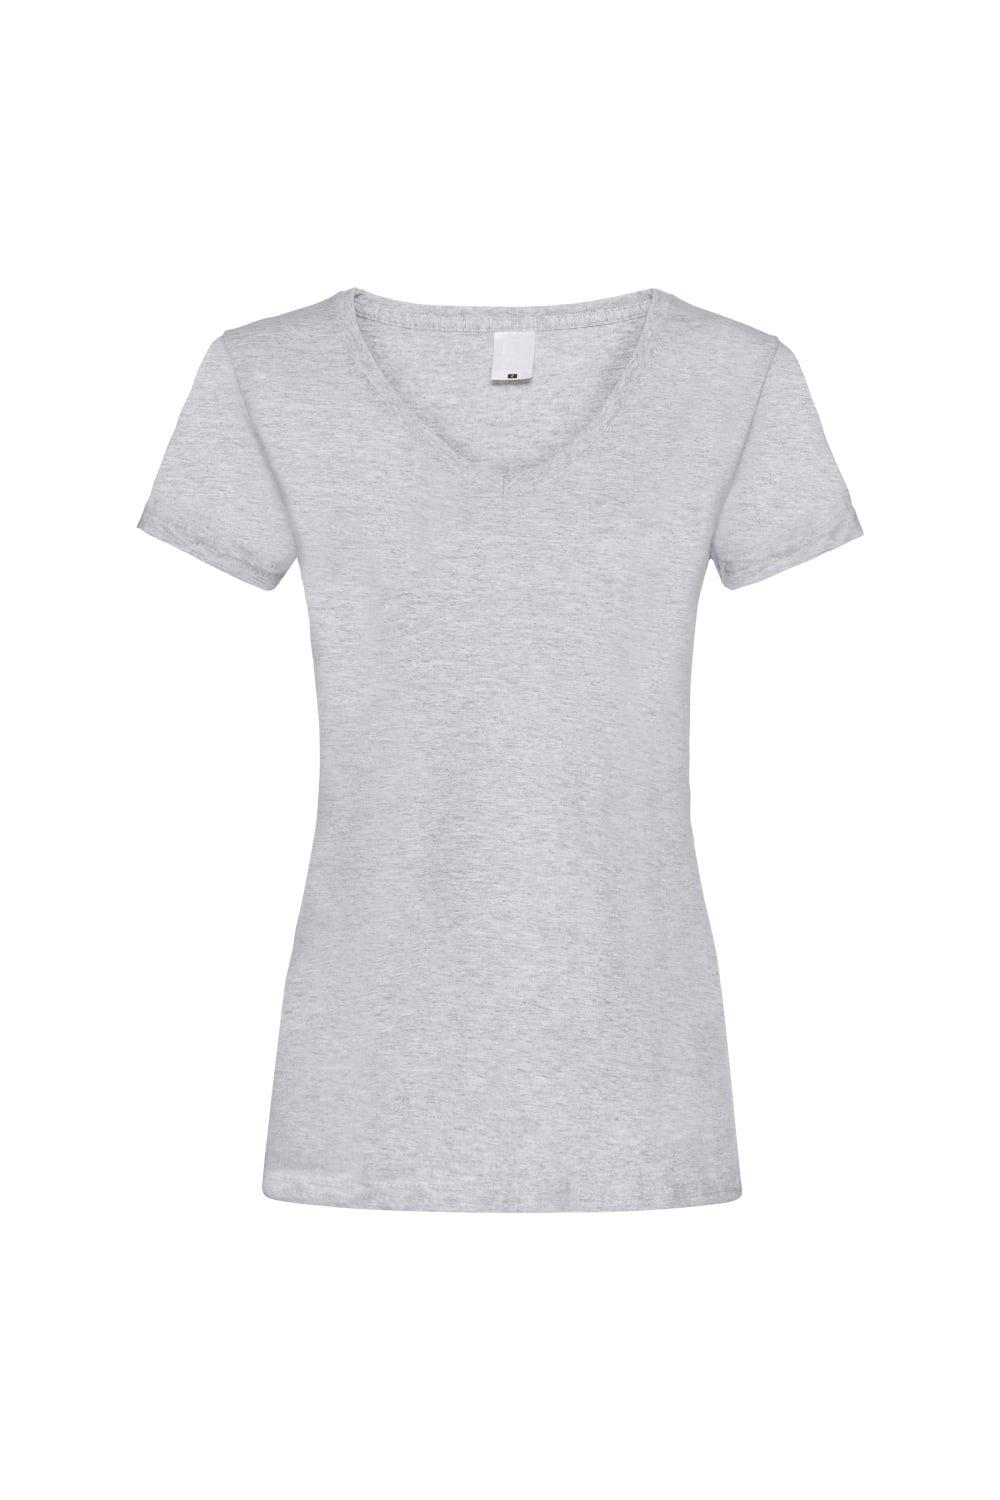 Повседневная футболка Value с V-образным вырезом и короткими рукавами Universal Textiles, серый мужская футболка доберман принт собака s серый меланж